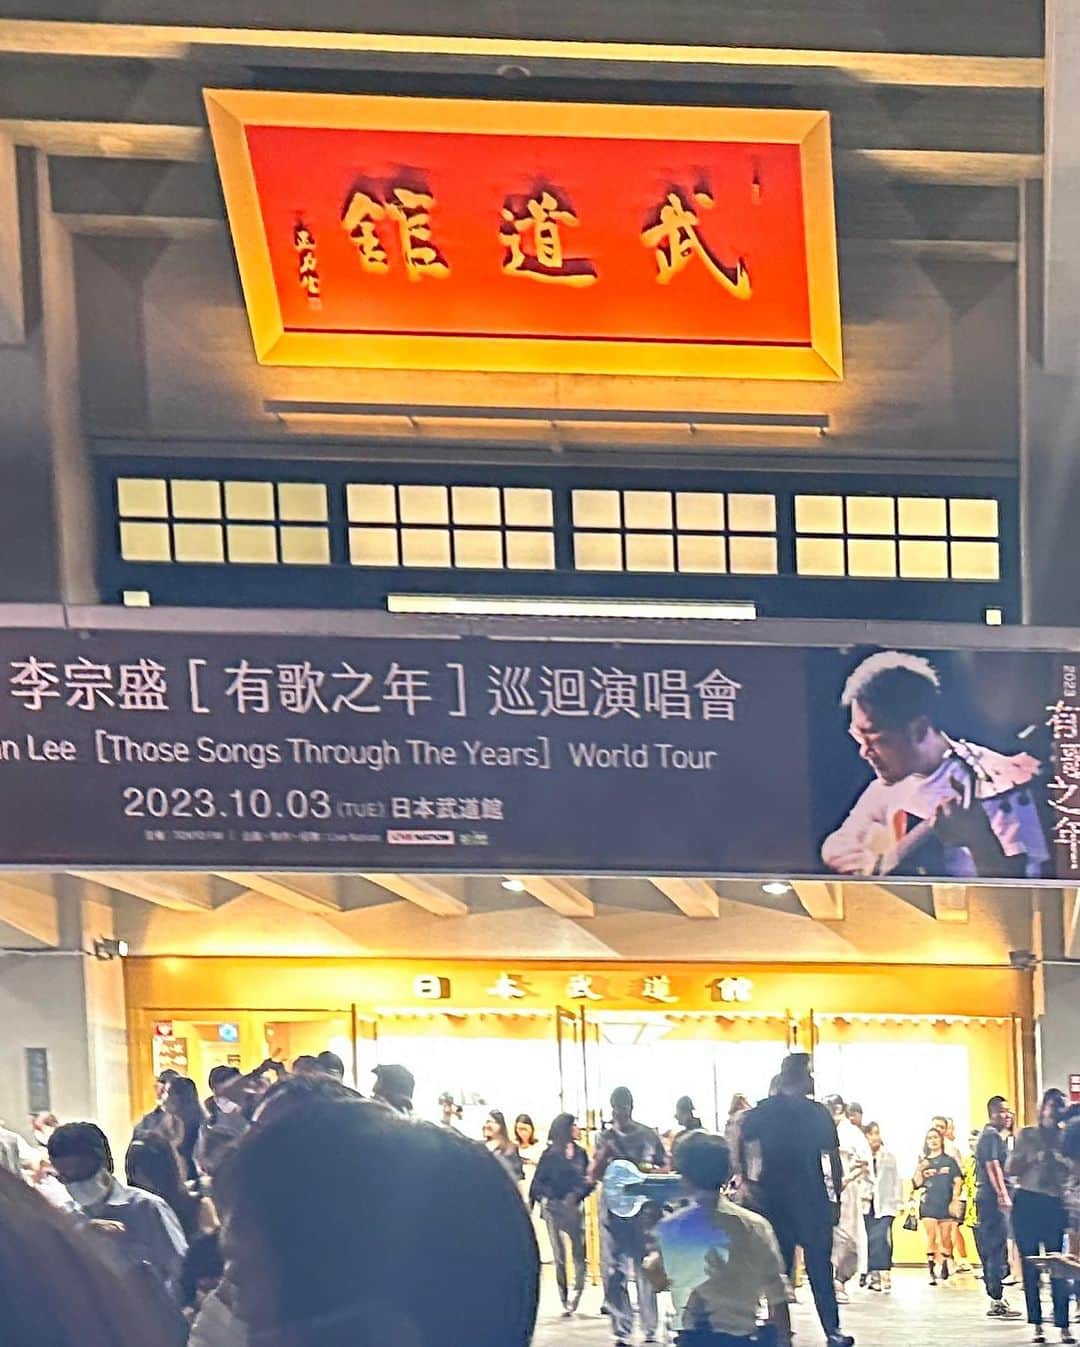 一青妙のインスタグラム：「昨晩は、日本武道館で、台湾の歌手・音楽プロデューサー 李宗盛（ジョナサン・リー）のコンサートに行ってきました！ 中華圏ではヒットメーカーとしてとても有名な李宗盛ですが、日本では名前を知る人は少なく、しかもチケットは二階席で２万円……。 どのぐらい入っているのだろうかと不安でしたが、なんと満員。 しかも中国語しか聞こえてこない。 東京中の中国人が集まったと思えるぐらいの中国人（あとちょっとの台湾人と日本人）で客席はいっぱいでした。  とにかく90年代から30年間にわたってヒット曲を書き続けてきた李宗盛だけあって、ナンバーの充実度がものすごい。 あ、この歌も、あの歌も、という感じで耳慣れた歌ばかりで、観客もみんな歌えるため、武道館が中国語カラオケになっていました（笑）。  最も感動したのは「男と女」の中国語版「讓我歡喜讓我憂」を歌った周華健がサプライズ登場し、さらに、原曲を作ったASKAまで。 中国語の詞をかいた李宗盛とあわせて３人が合唱するという、夢のような舞台に、涙が出るほど感動しました。  最後は大ヒットナンバーの「越過山丘」で締めくくり、アアンコール含め、約3時間の大満足な時間はあっという間に過ぎていきました。  とにかく李宗盛の渋くて詩のような深みのある歌詞が大好き。台湾でずっとコンサートに行きたいと思っていたのですが、なかなか叶わず、ついに。あ〜幸せ。  #李宗盛 #ジョナサンリー #有歌之年 #武道館ライブ #aska」